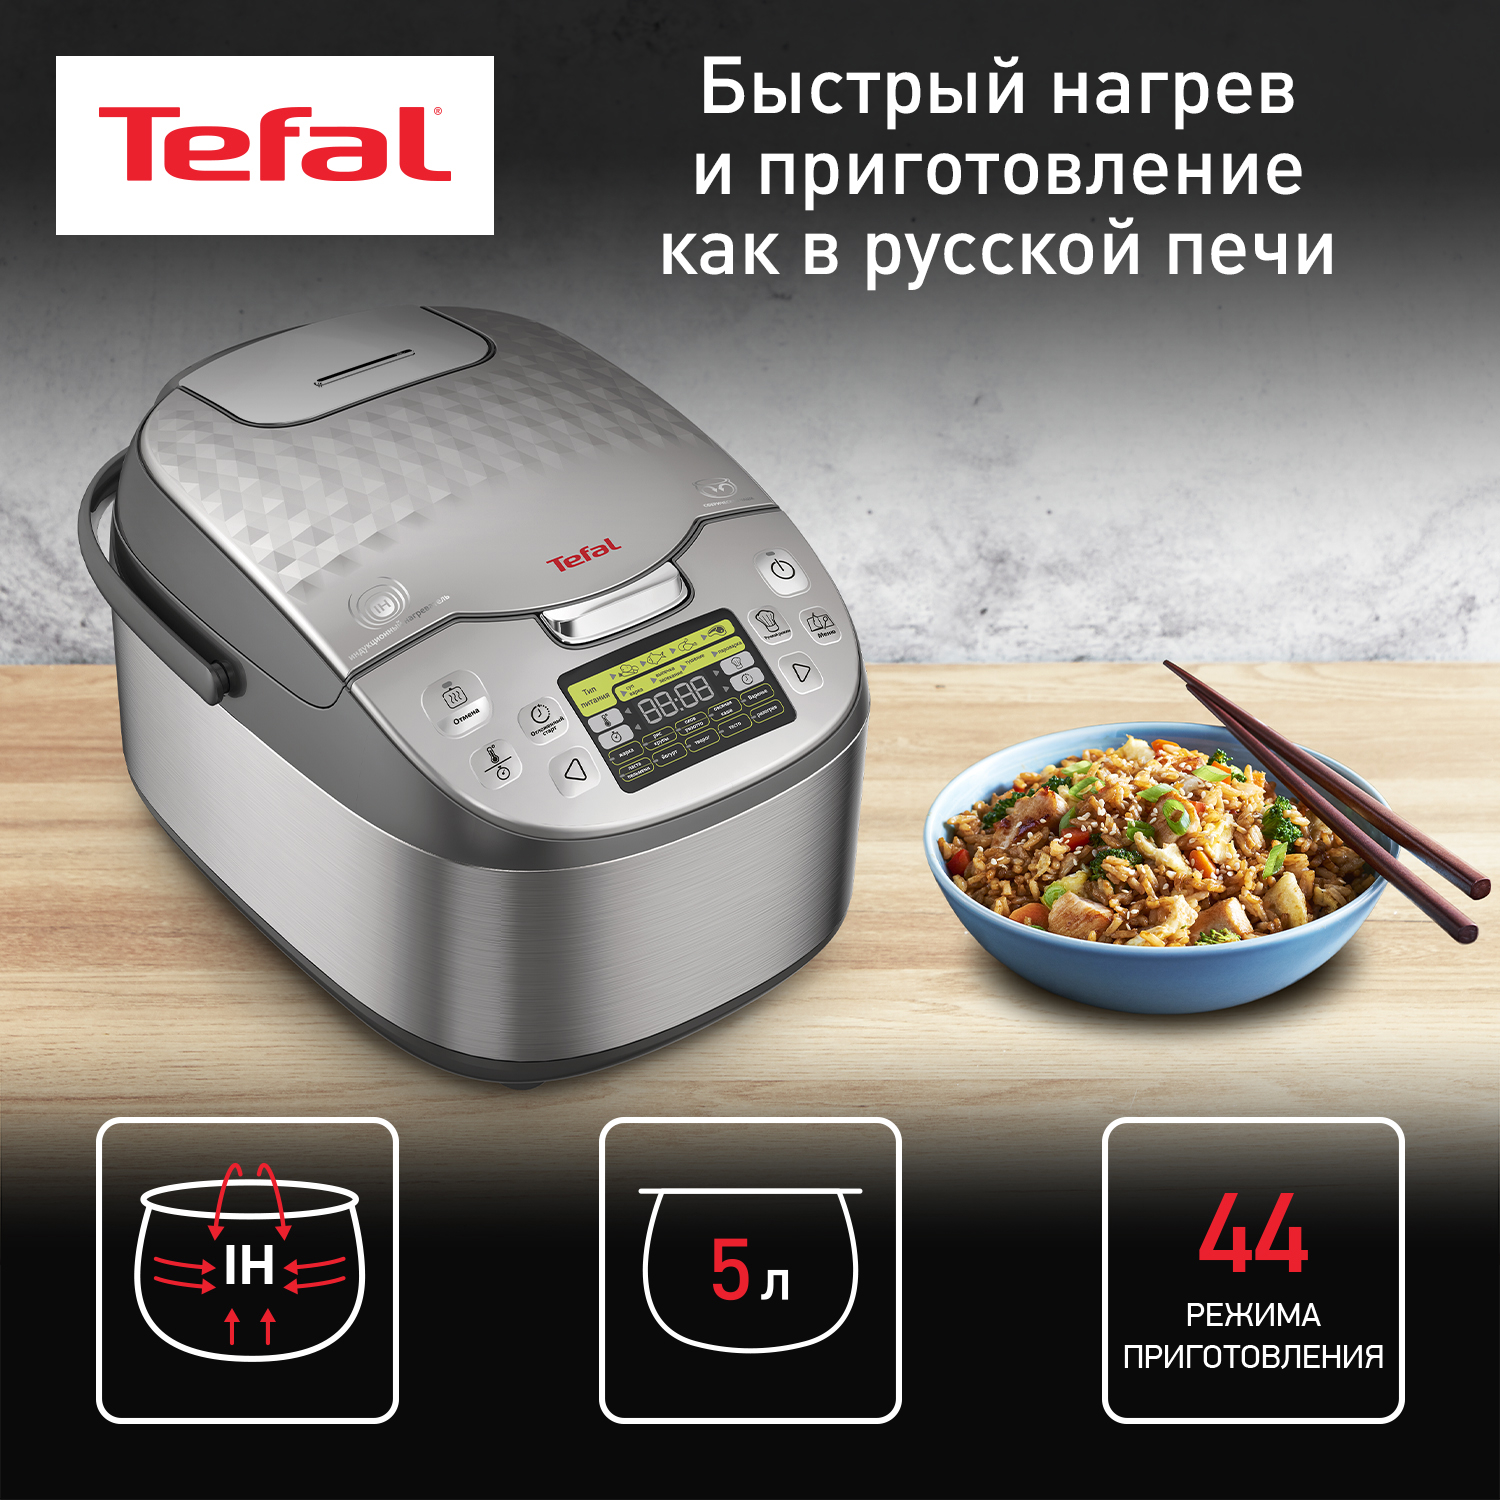 Мультиварка Tefal RK807D32 мультиварка tefal multi cook stir rk901832